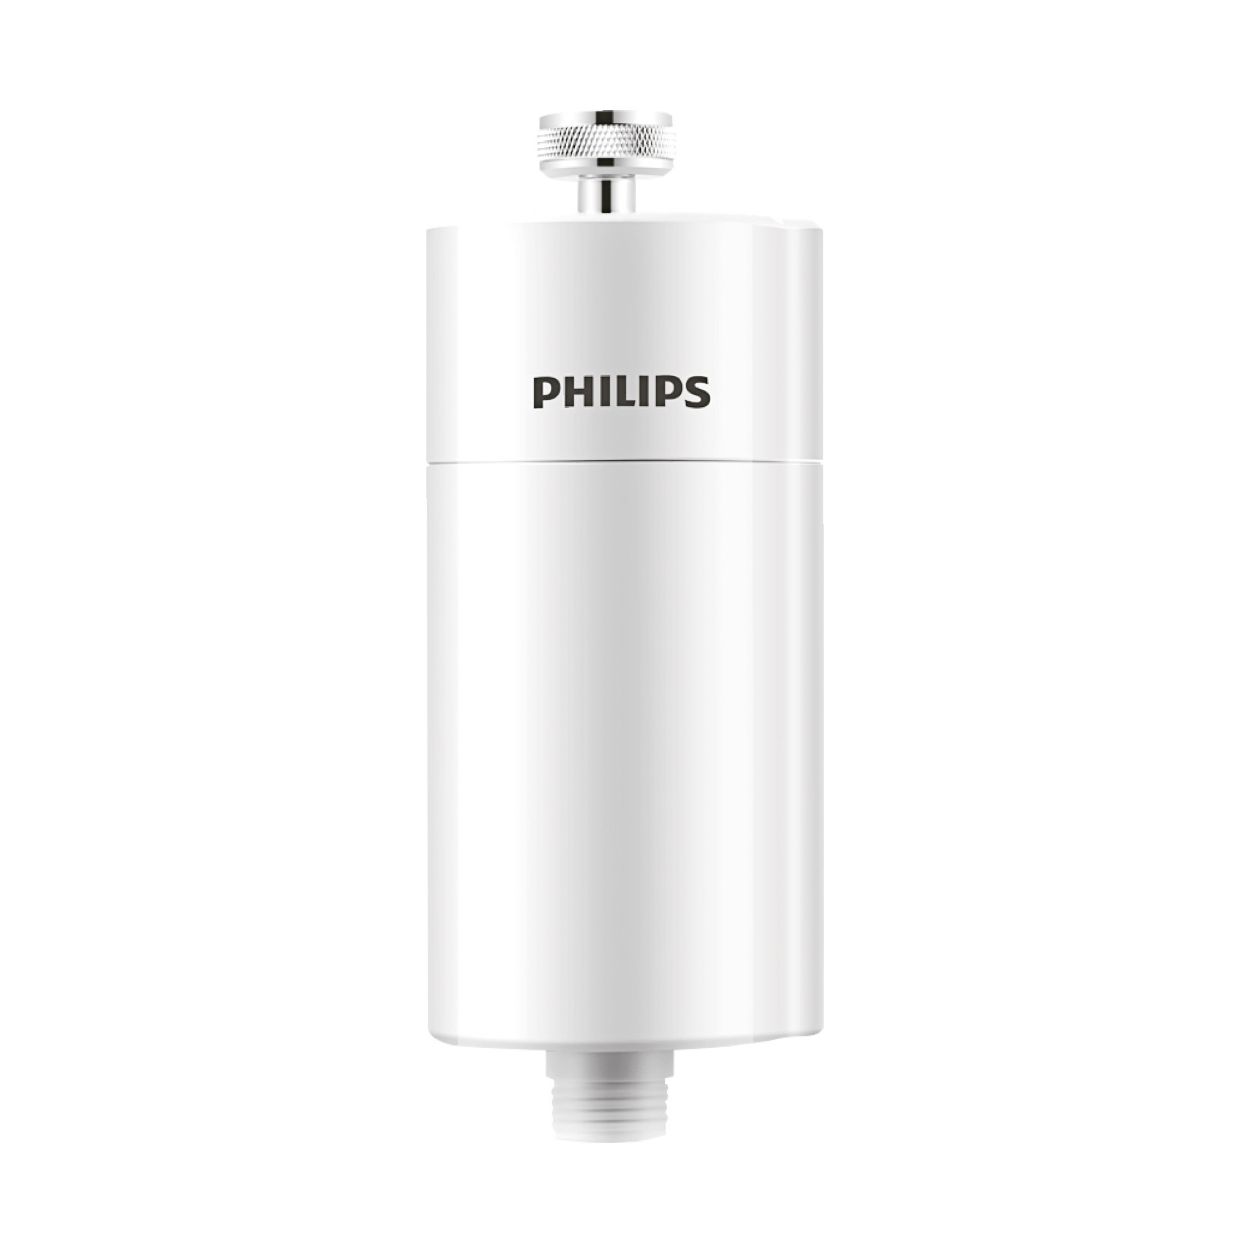 Cuida tu pelo con este filtro Philips para ducha que arrasa en